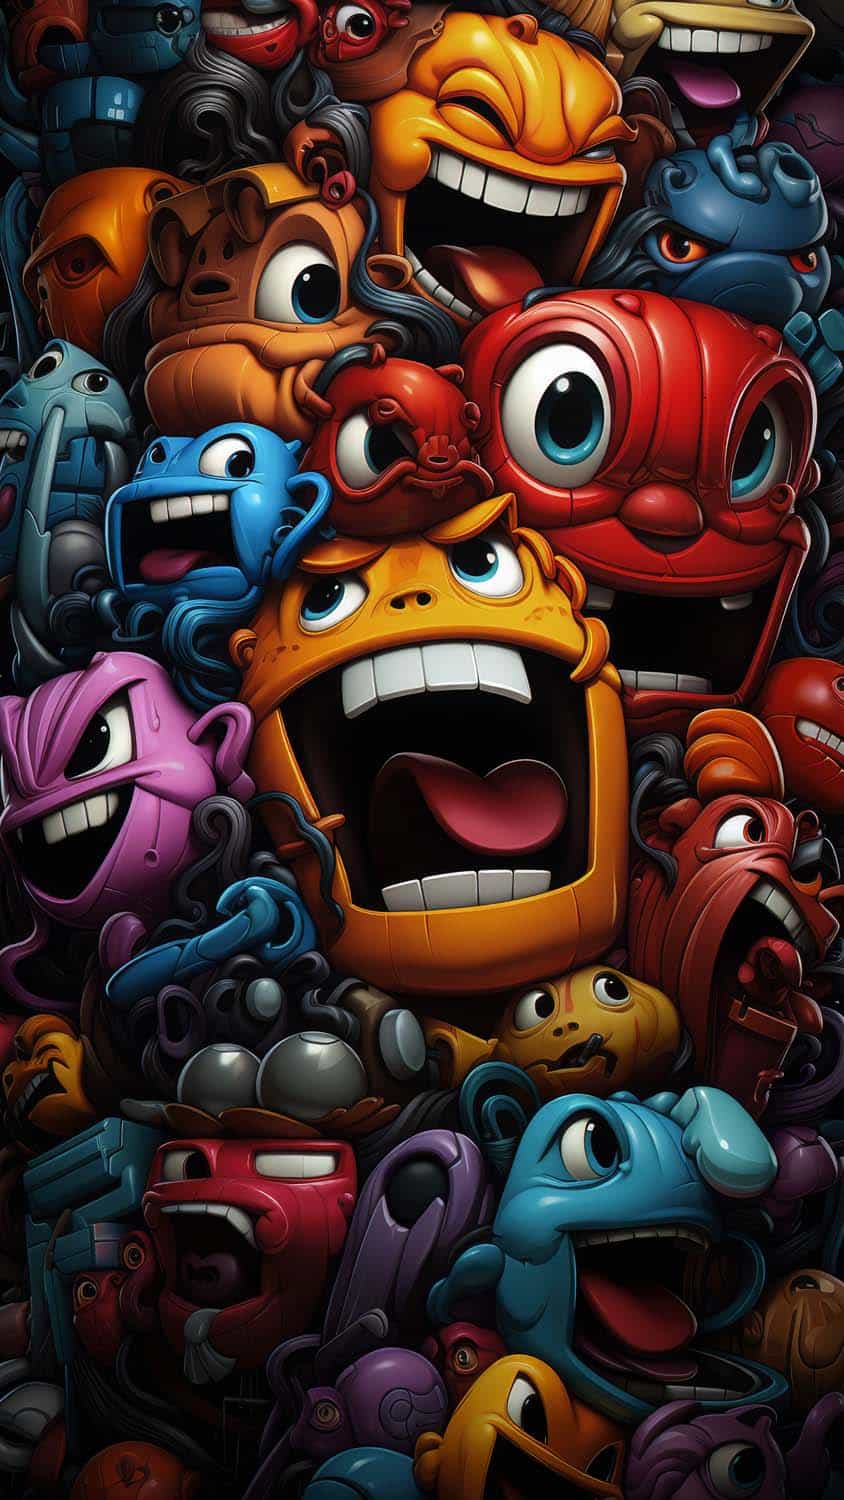 Crazy Monsters iPhone Wallpaper